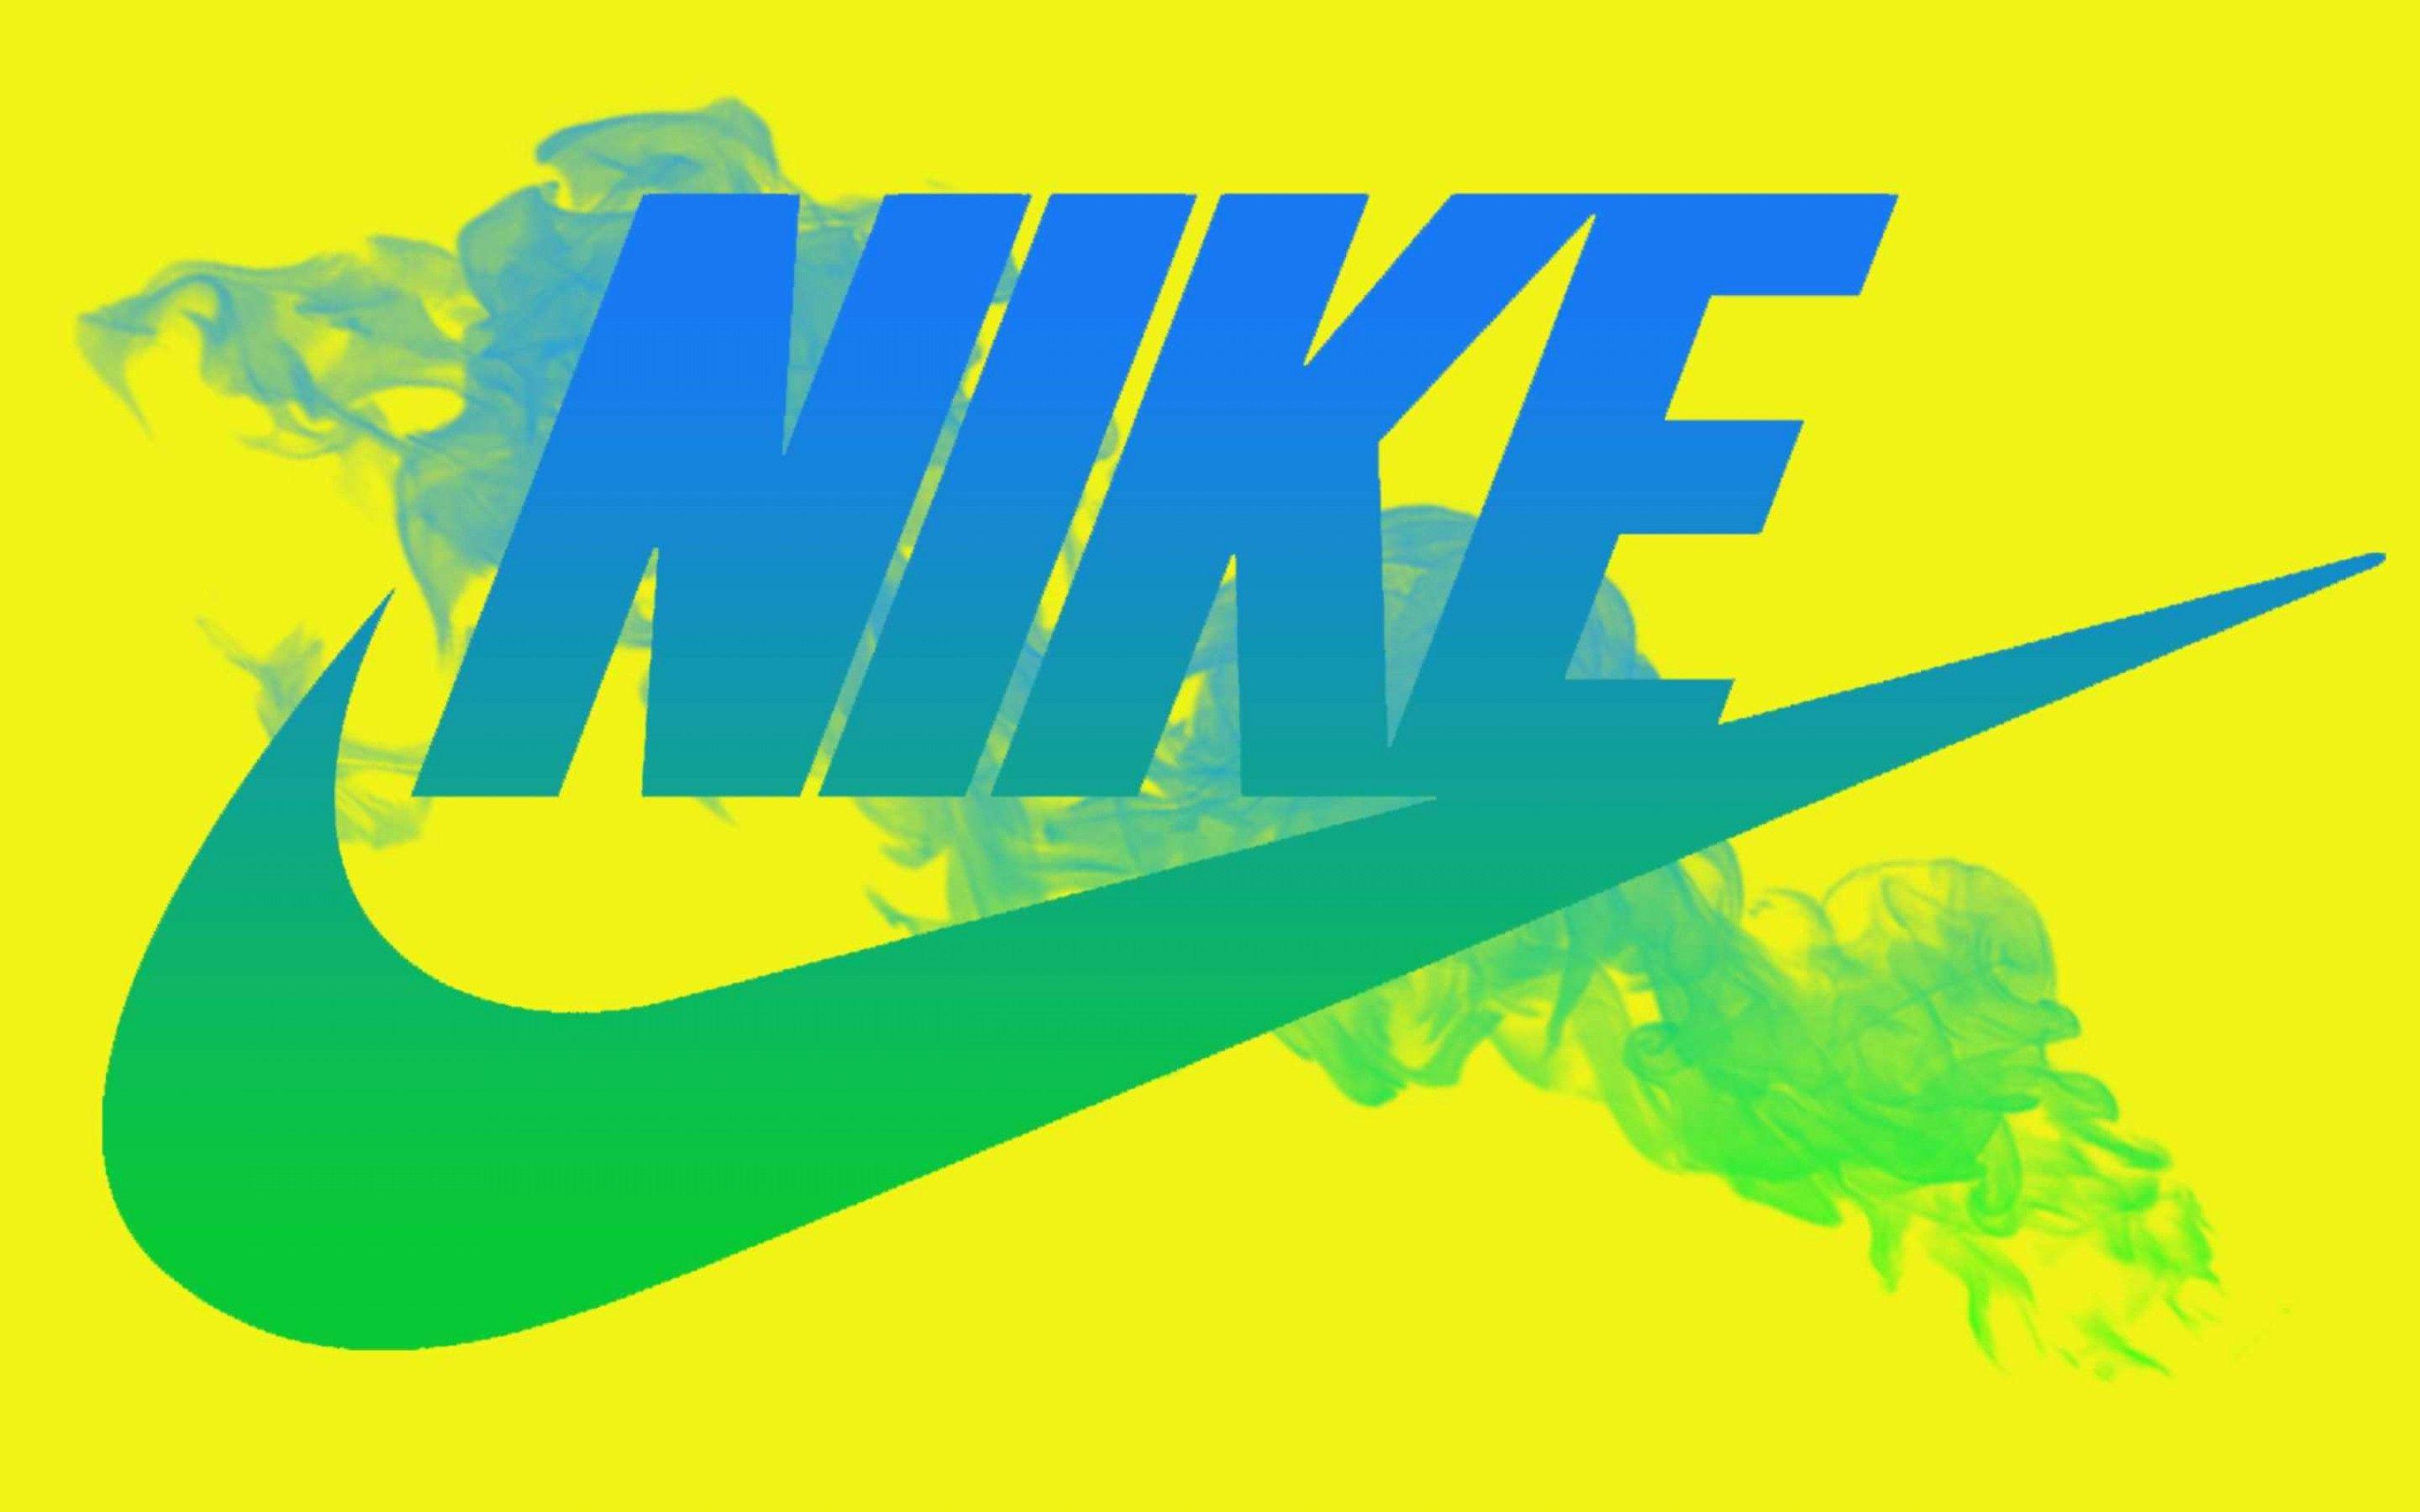 Neon Nike Logo - Nike Wallpaper High Definition. Gaming. Nike wallpaper, Nike